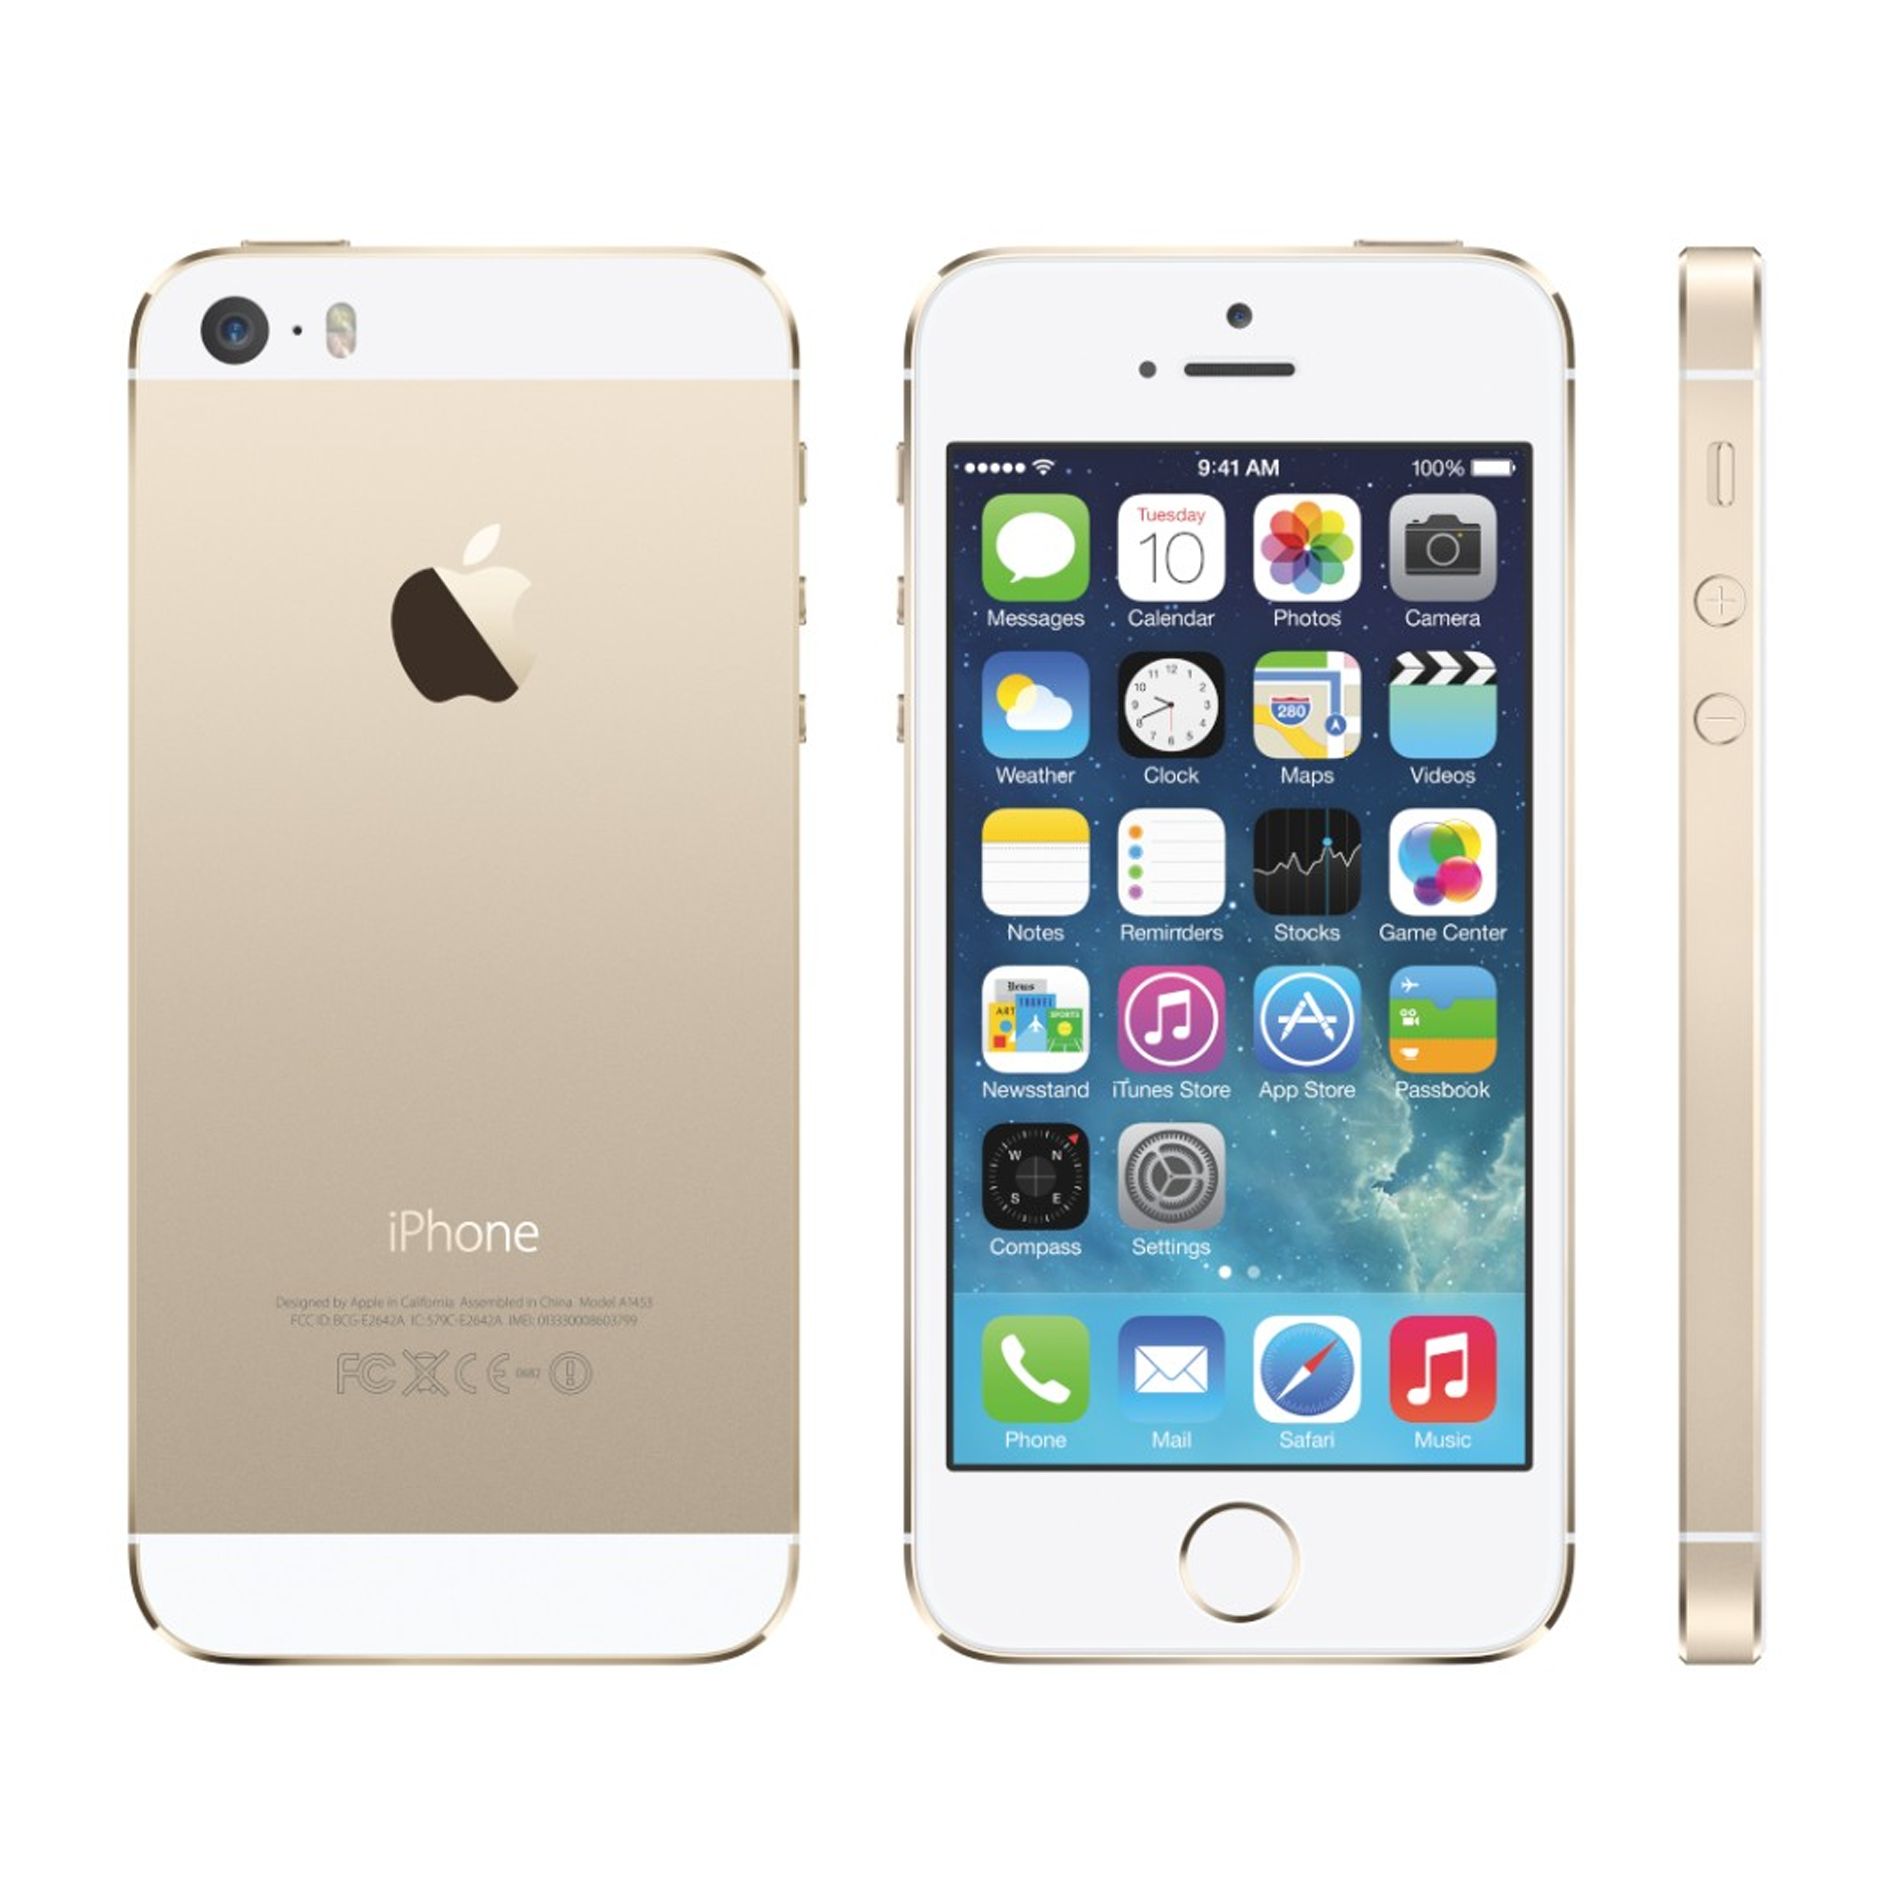 ĐTDĐ Apple iPhone 5S 16GB Gold (Bản Quốc Tế)